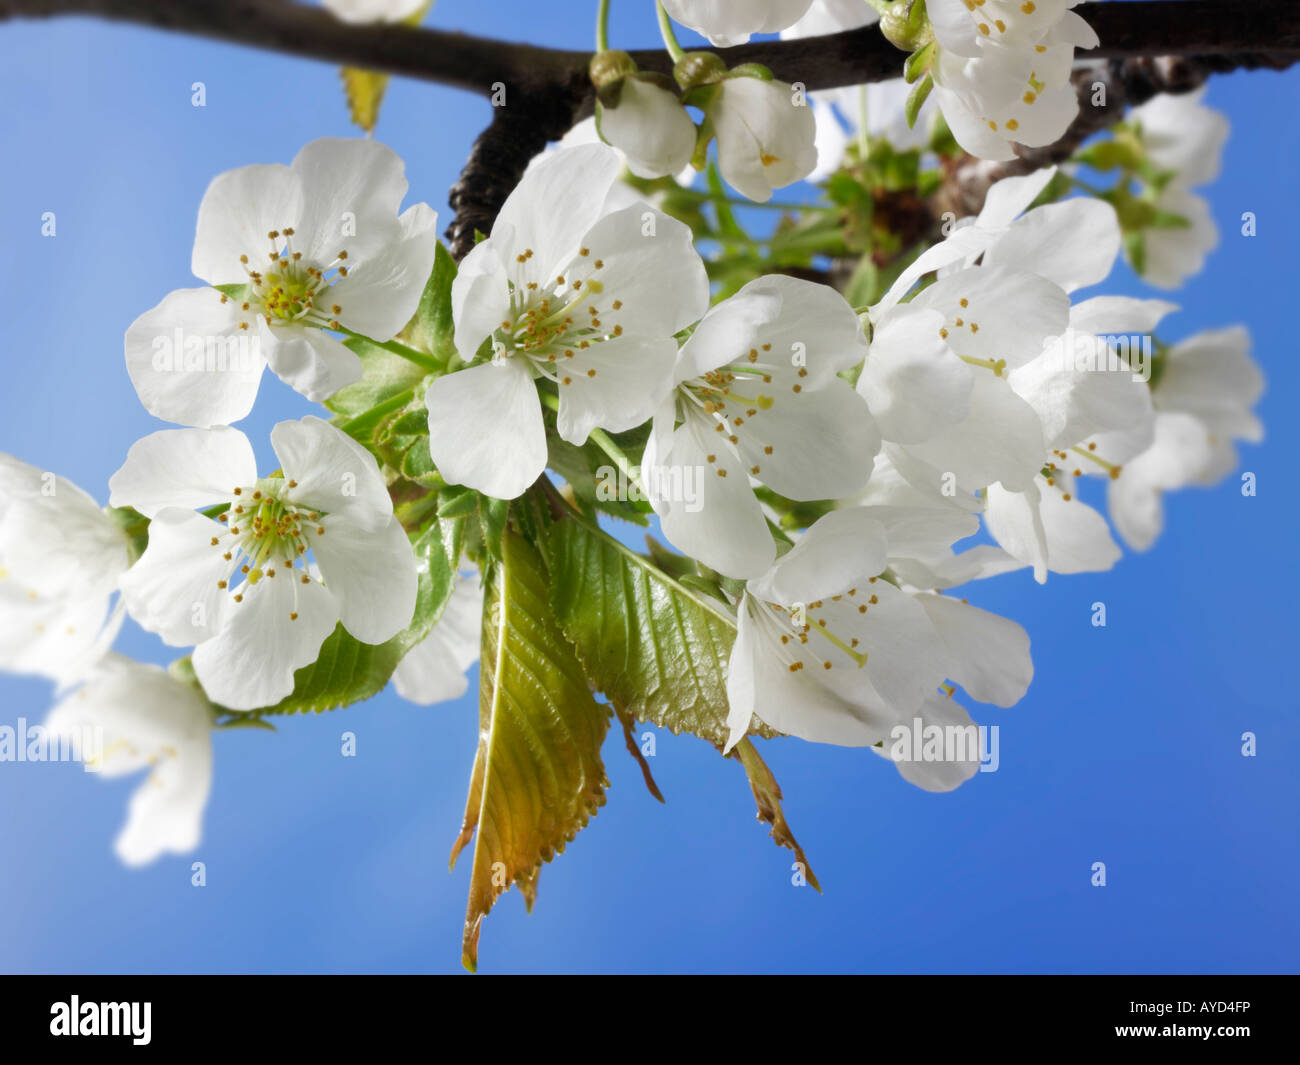 Foto di bianco fresco di fiori di ciliegio, fiori e petali freschi raccolti da un albero ciliegio Foto Stock